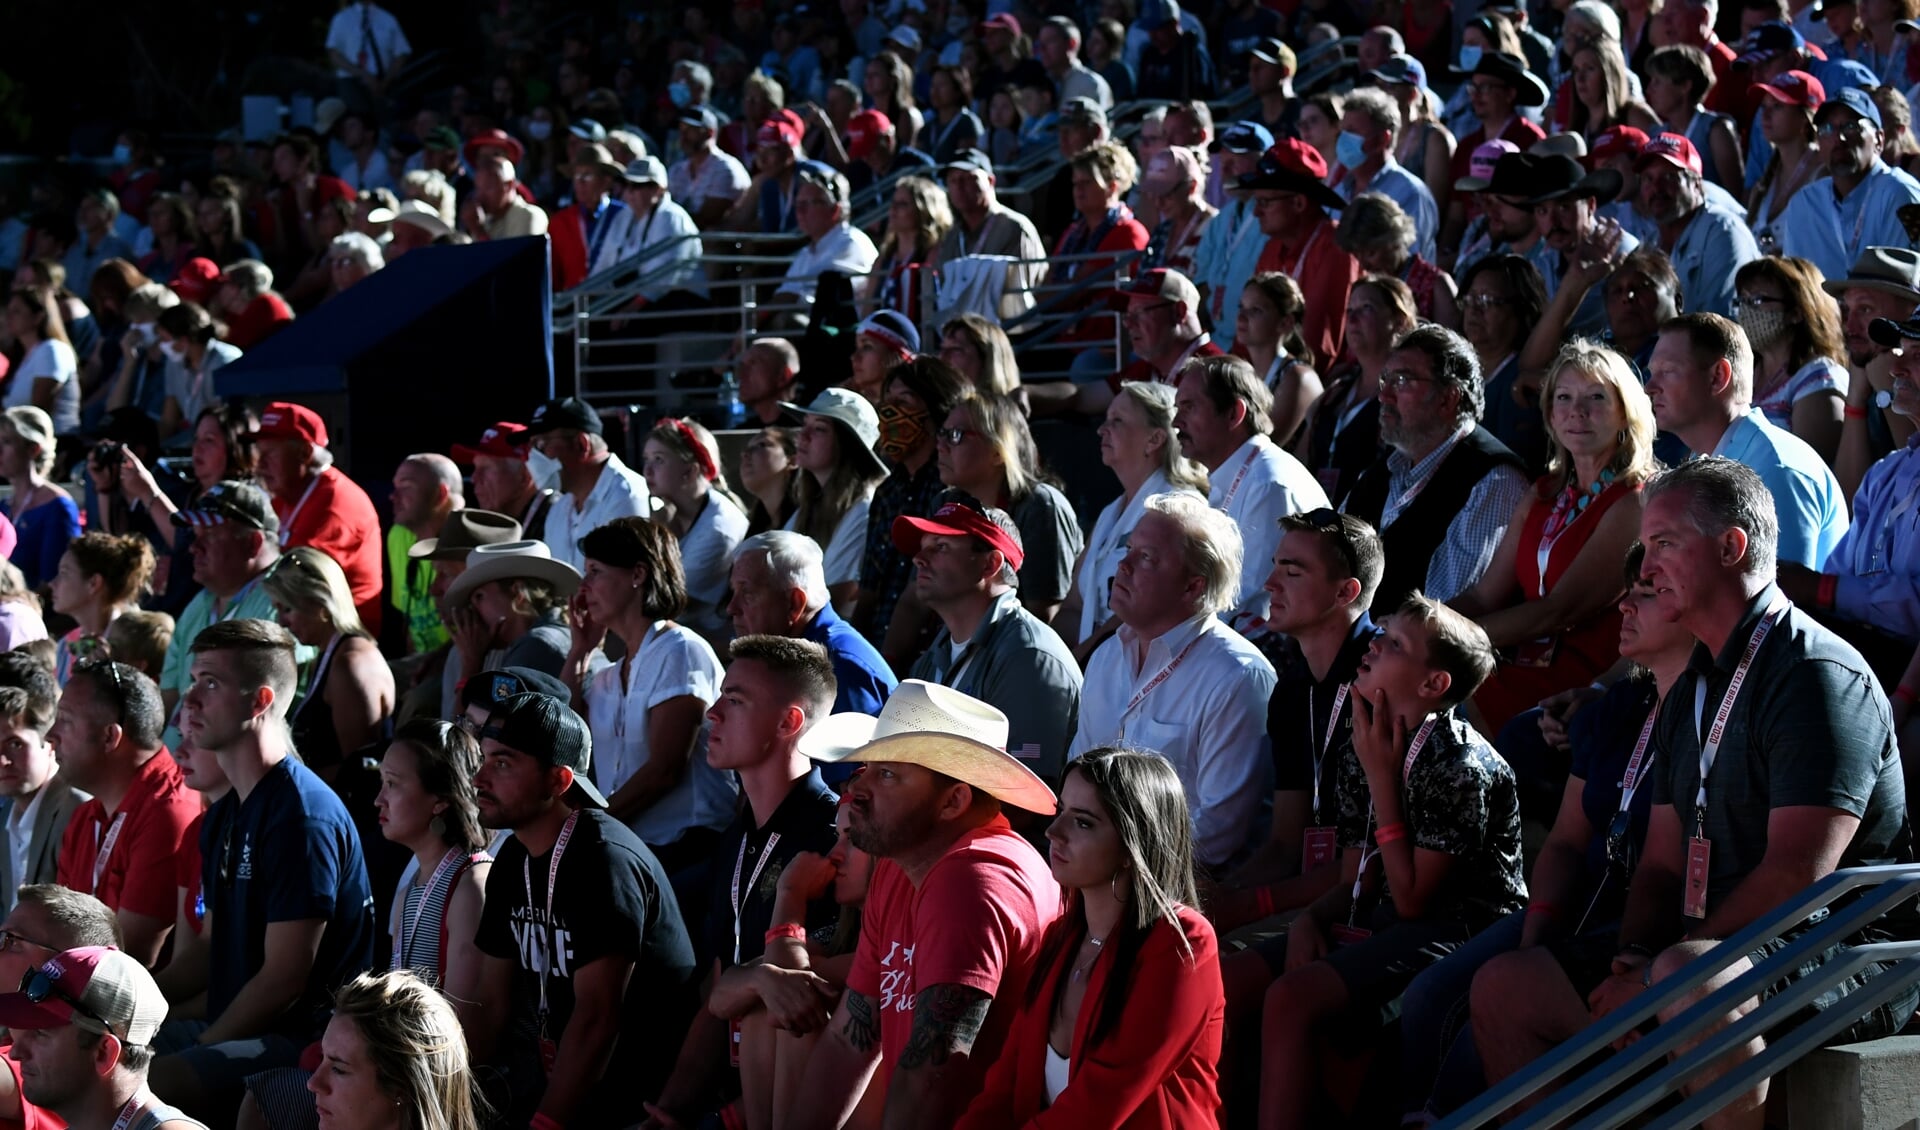 Aanhangers luisteren naar president Trump tijdens de bijeenkomst bij Mount Rushmore op 3 juli, voorafgaand aan Onafhankelijkheidsdag. De ongeveer 7500 aanwezigen droegen nauwelijks mondkapjes en hielden geen afstand van elkaar. 'Voorbij onverantwoordelijk', noemden artsen het optreden van de president. 